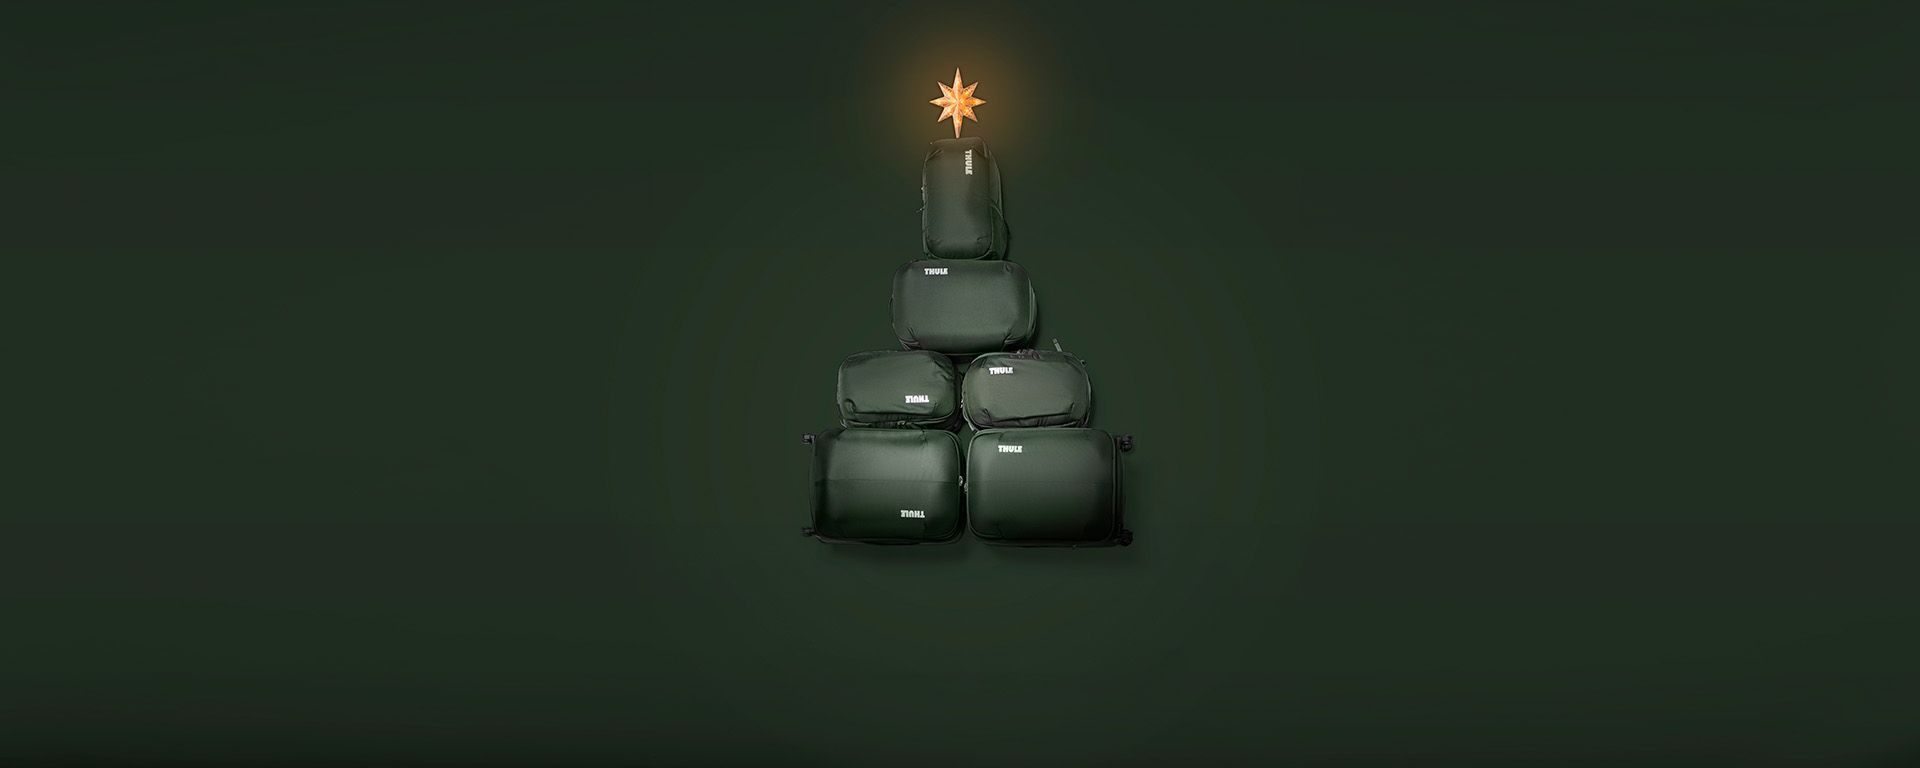 Fire grønne Thule Chasm rejsetasker er stablet i højden med en stjerne på toppen som et juletræ.